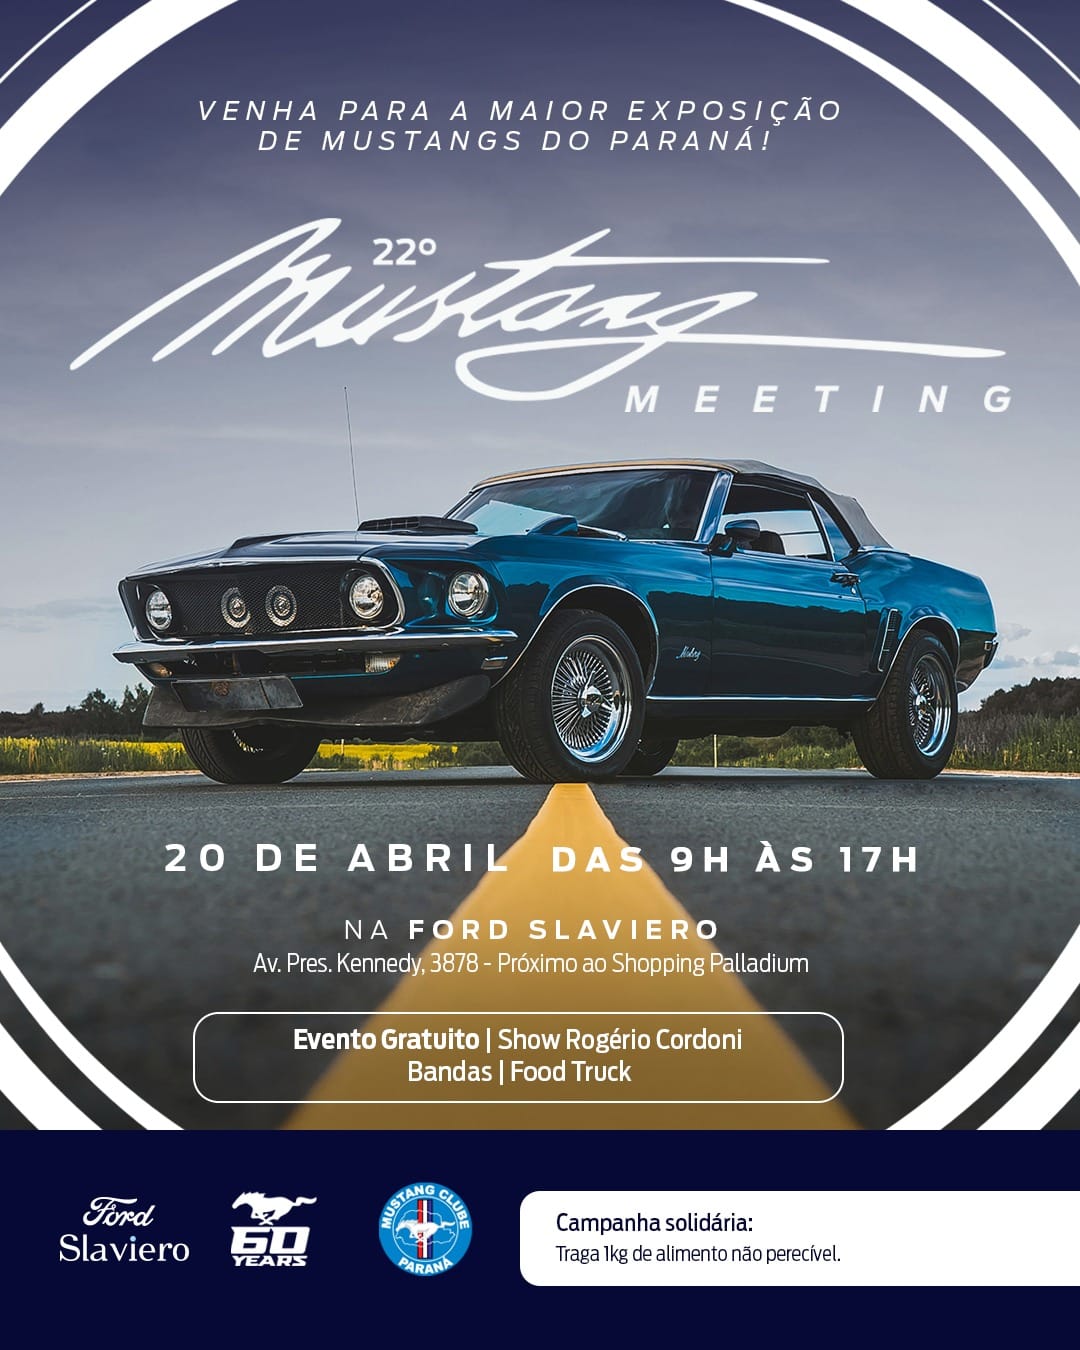 Ford Slaviero realiza evento em comemoração aos 60 anos do lendário Mustang